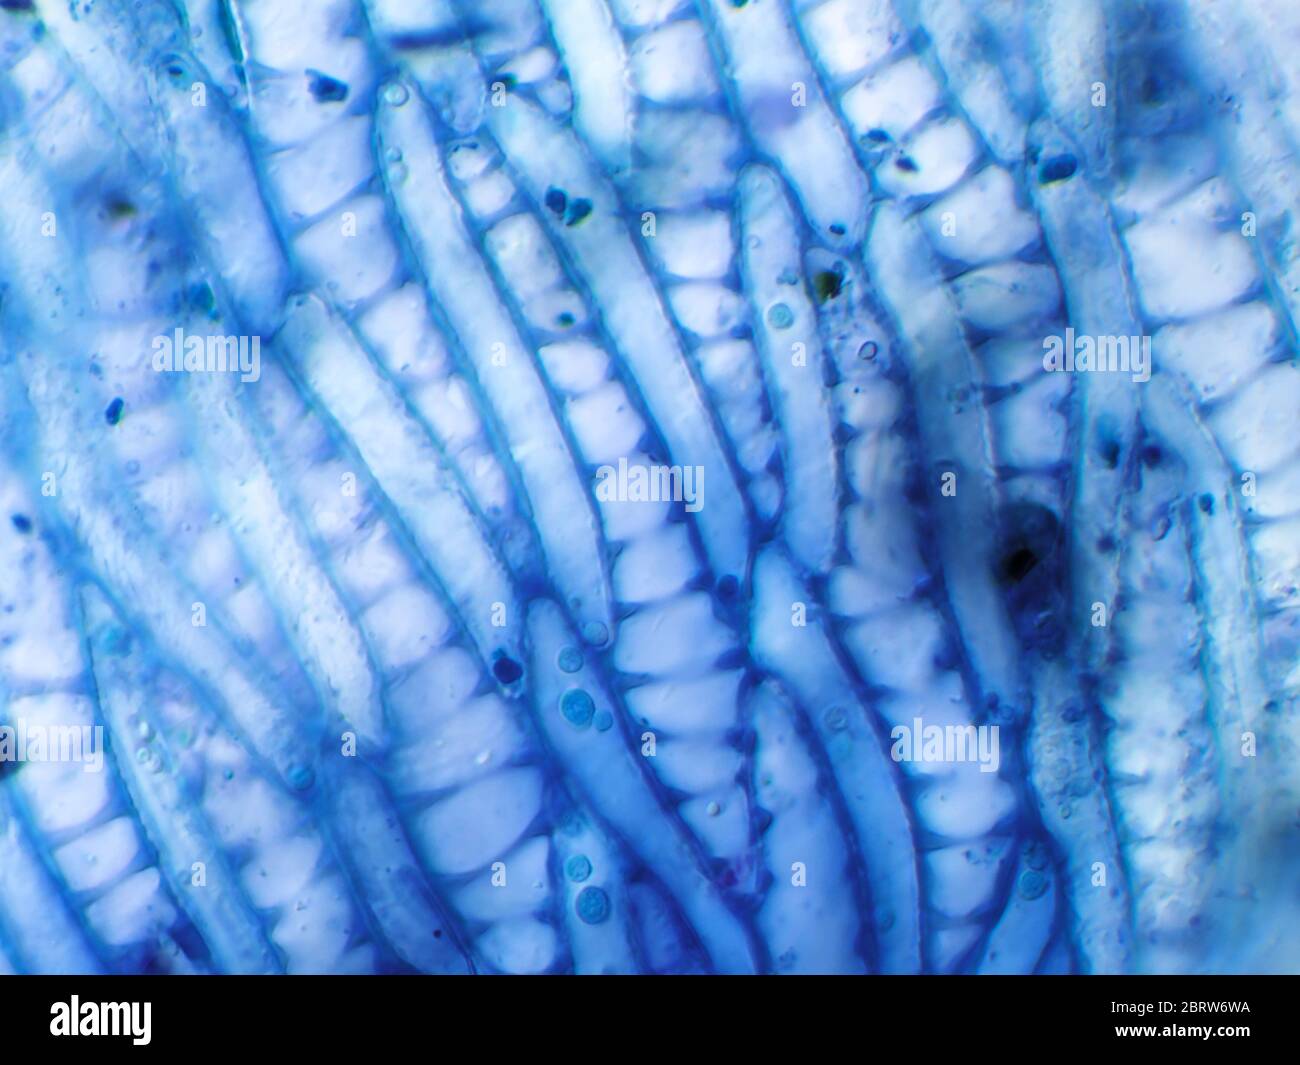 Pflanzenmaterial (gefärbt) aus einer Gartenwasserprobe, wahrscheinlich sphagnum Moos, unter dem Mikroskop; Filed der Ansicht ist etwa 1,2mm breit Stockfoto